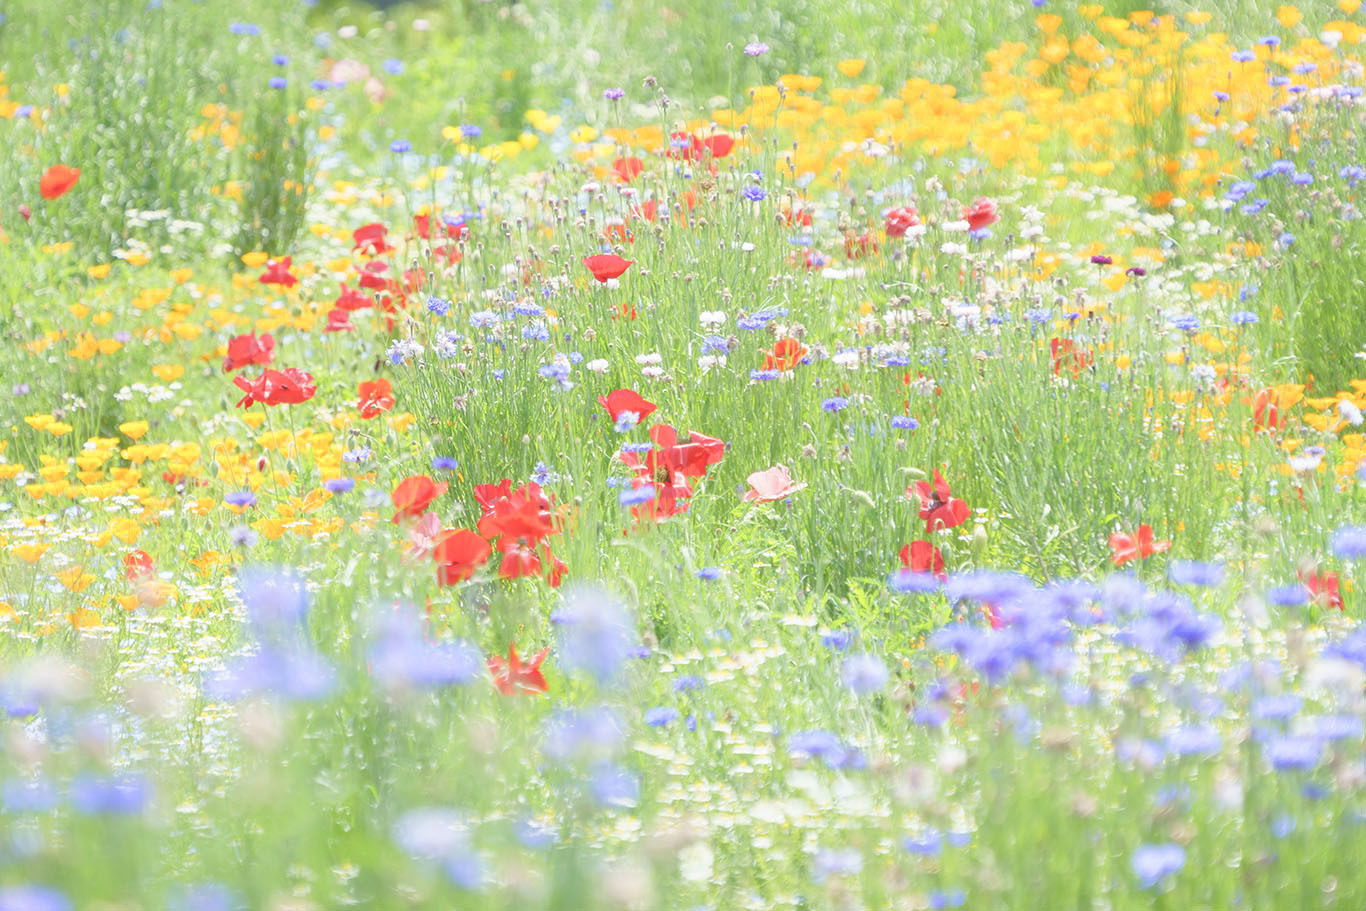 スイスのお花畑のようだった昭和記念公園 エーデルワイスブログ